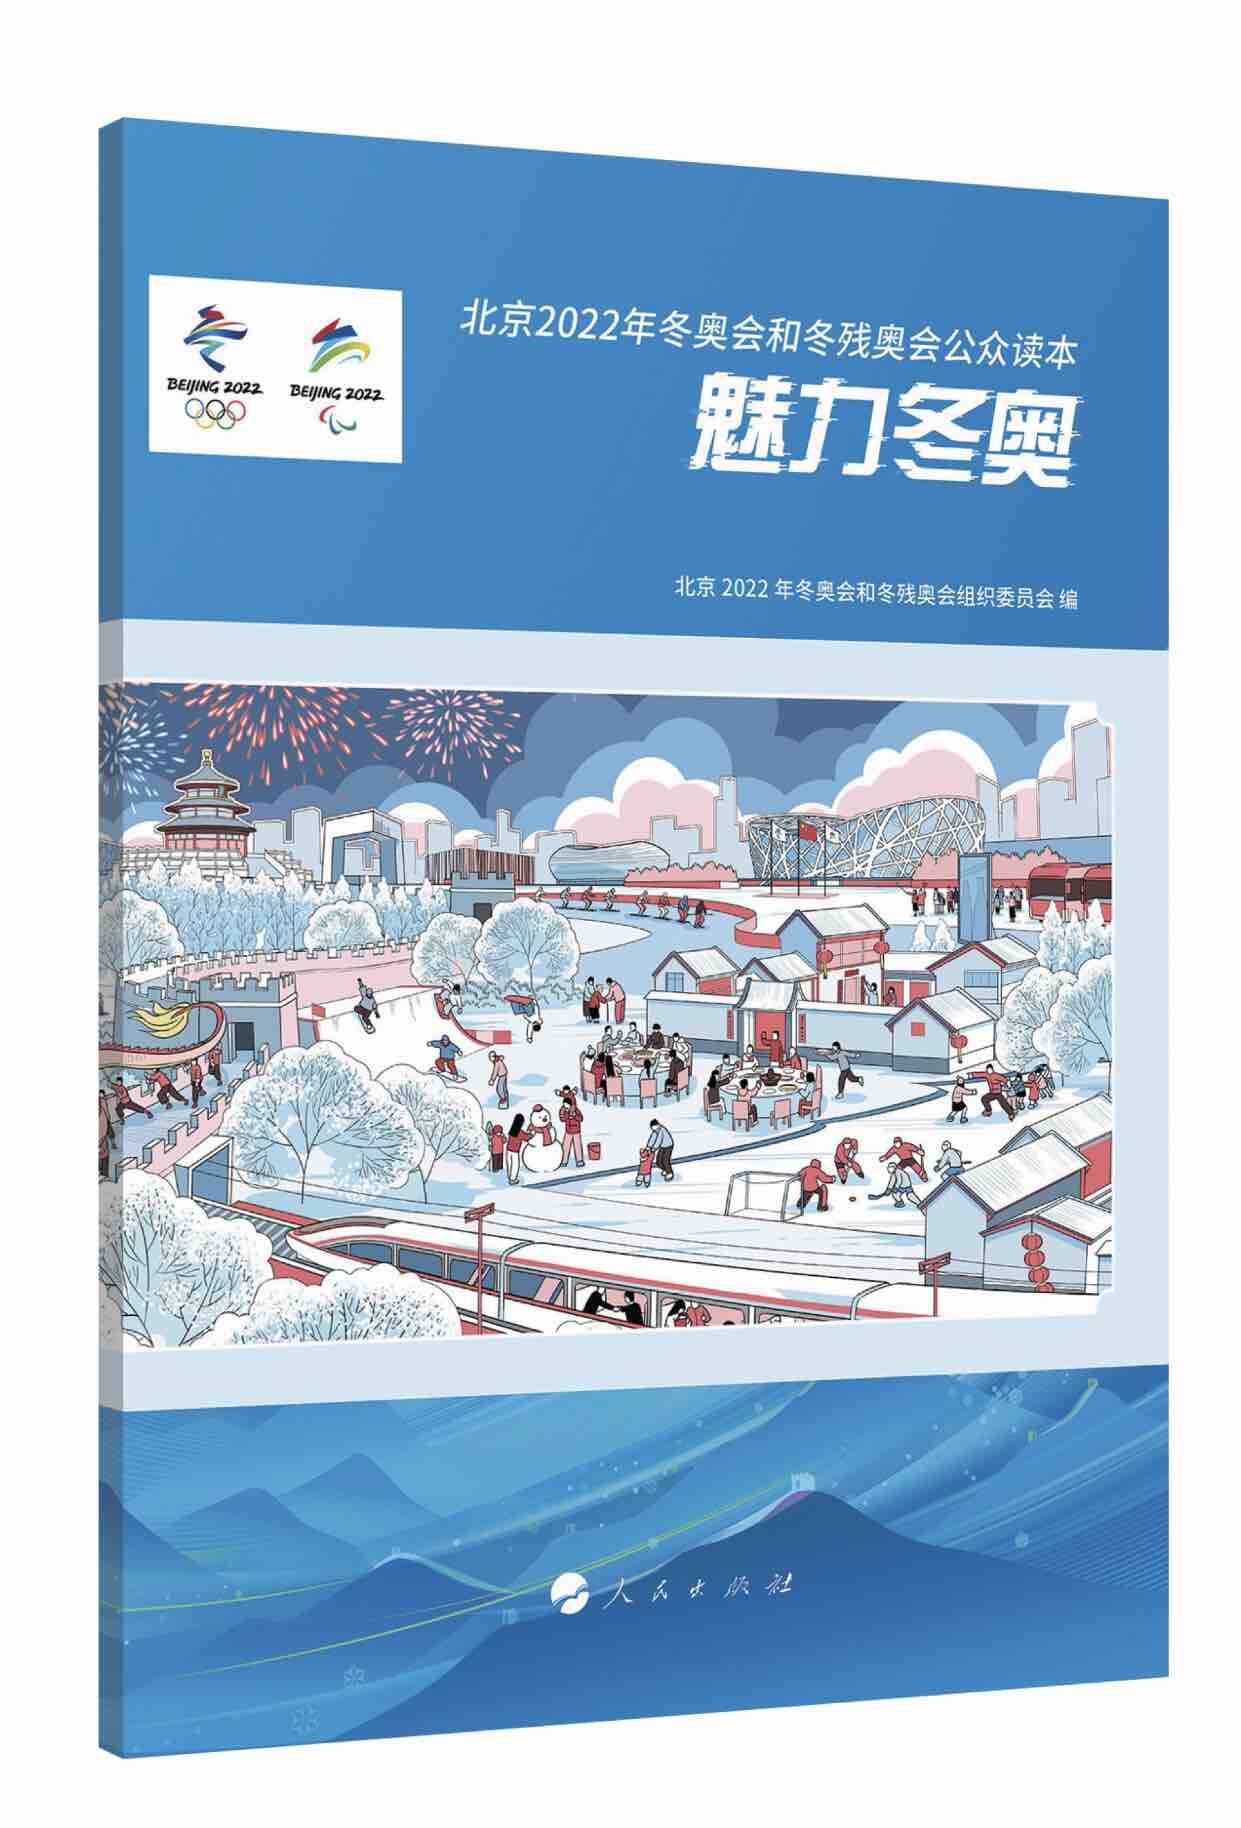 全民健身日！《北京2022年冬奥会和冬残奥会公众读本：魅力冬奥》正式发布